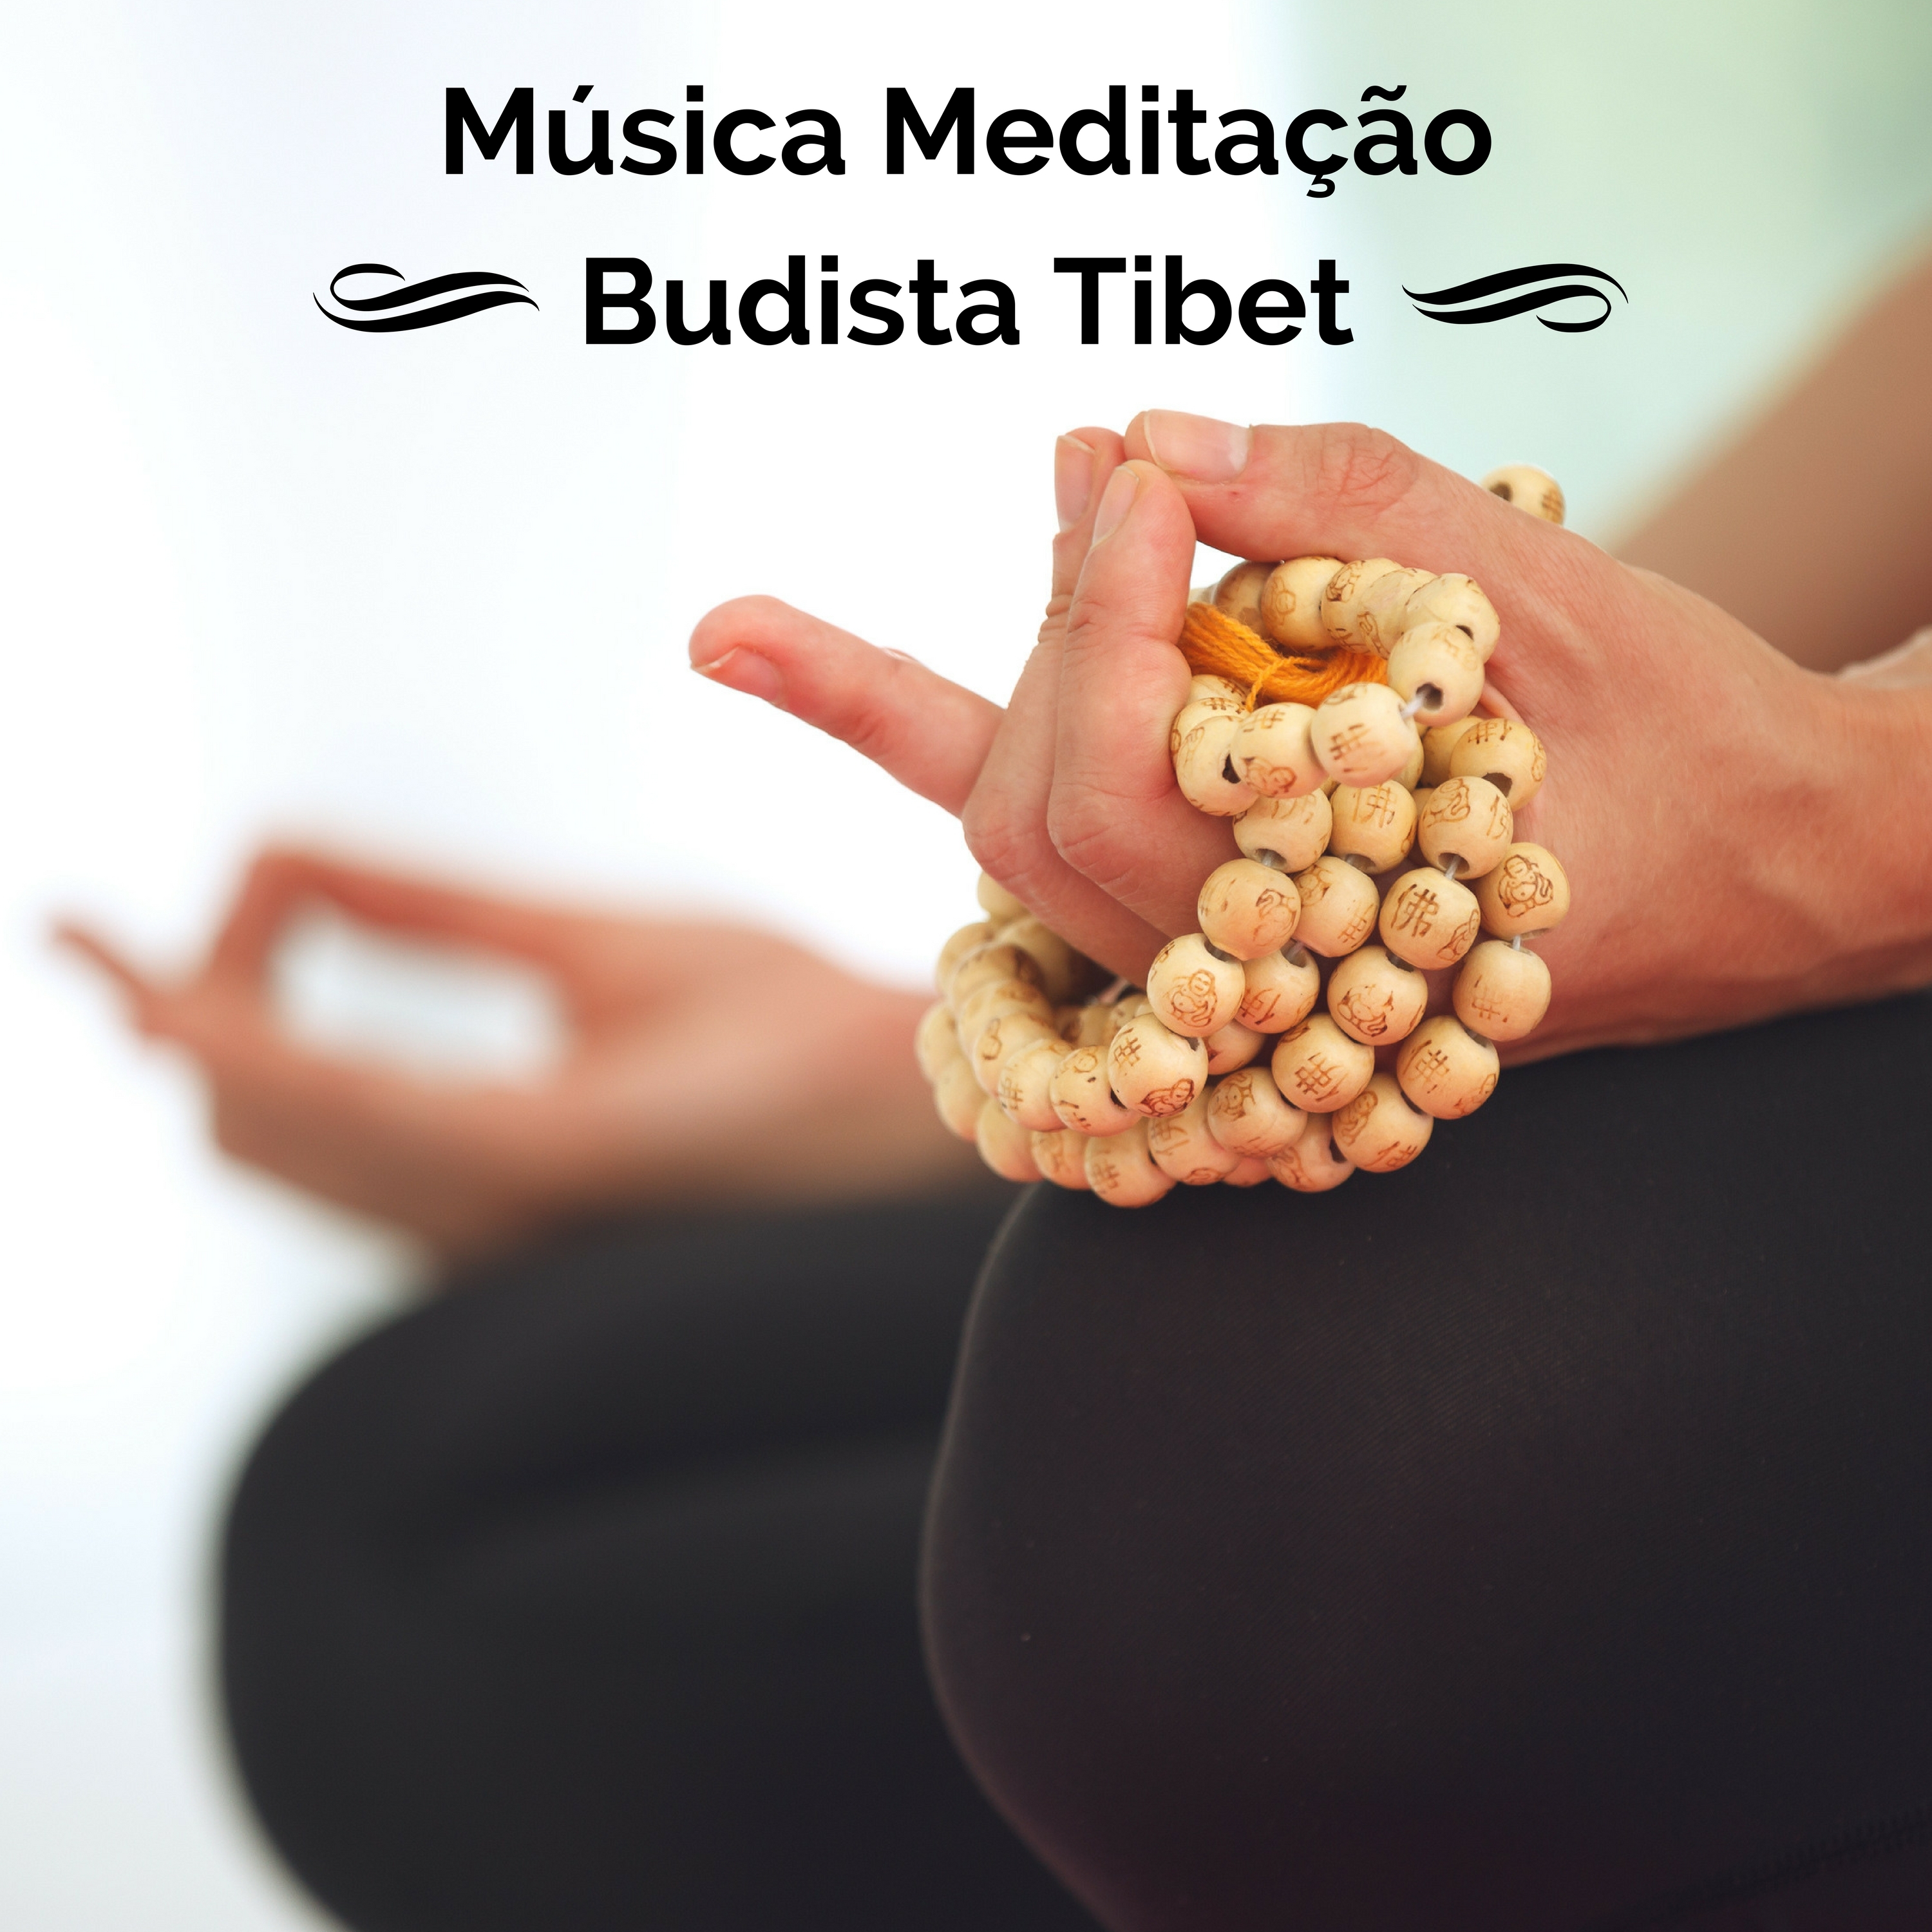 Musica Meditação Budista Tibet